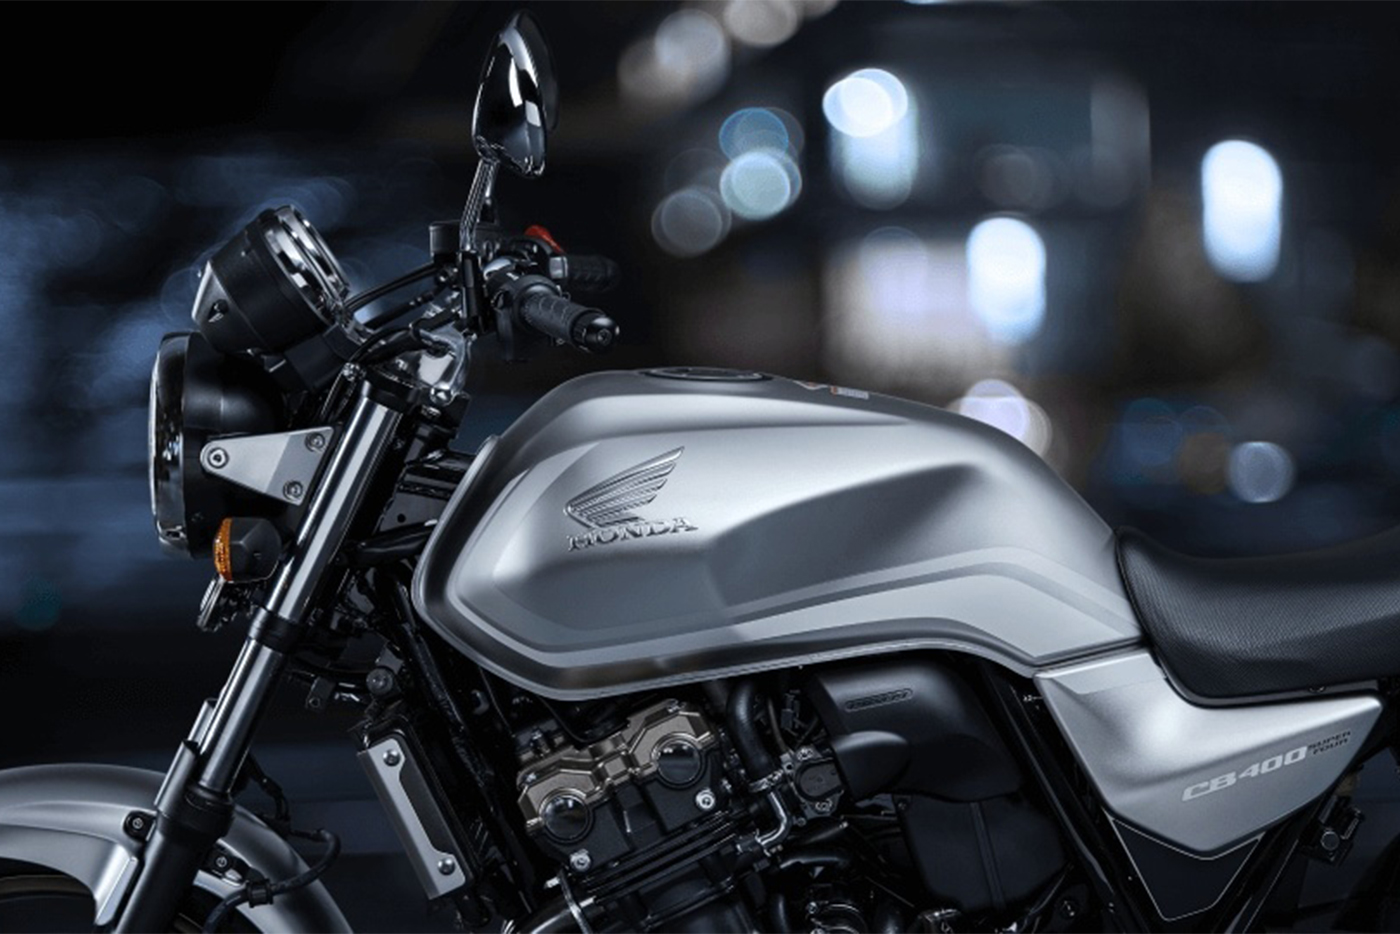 Huyền thoại Honda CB400SF Super Four 2020 sẽ có giá 220 triệu đồng  Tin  tức iMotorbike